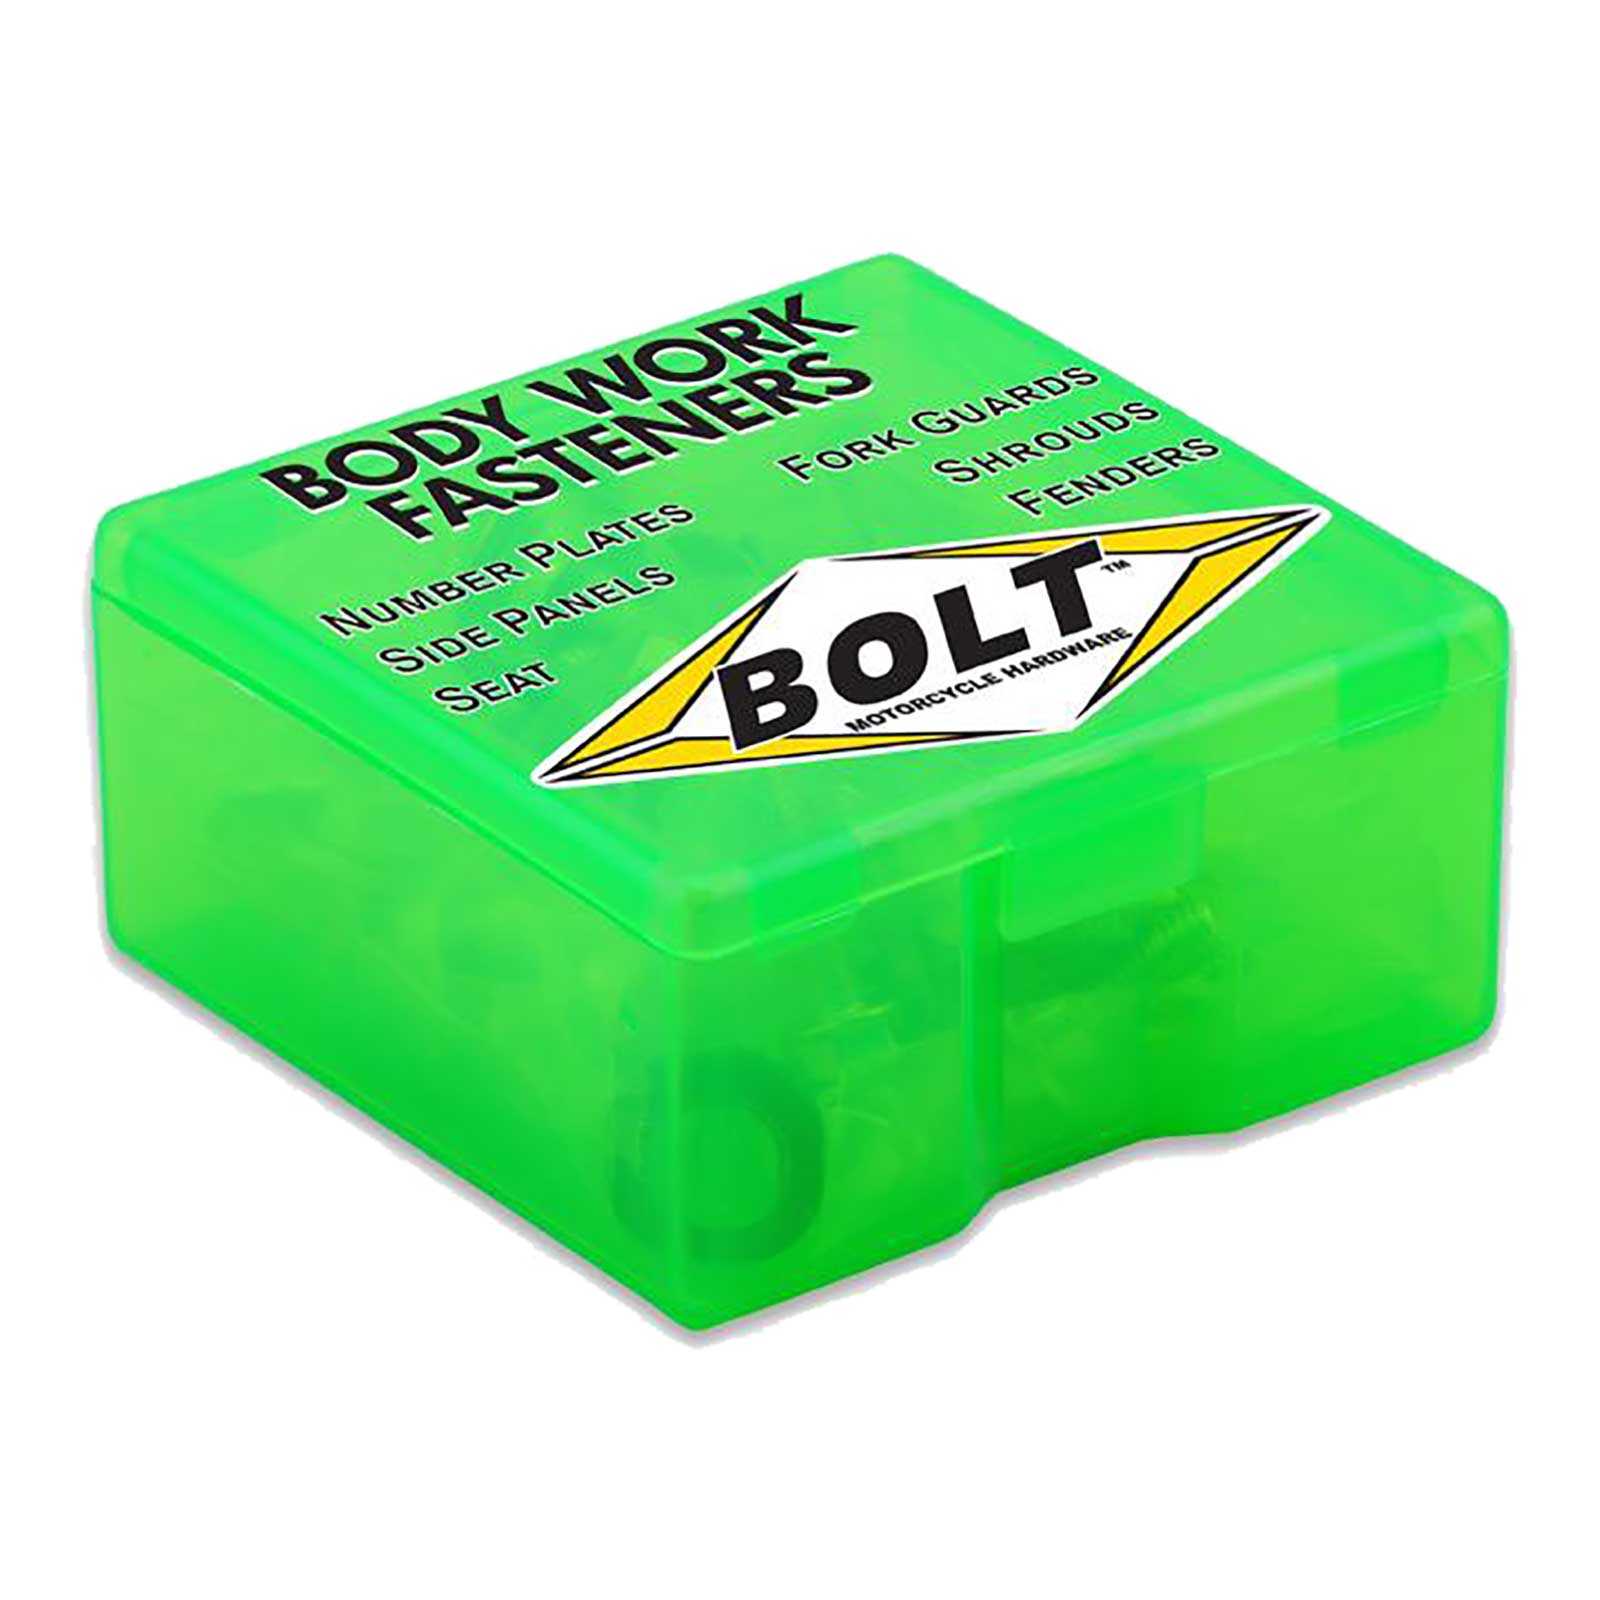 Bolt, BOLT BODY WORK FASTENER KIT KAW KX125/250 90-91